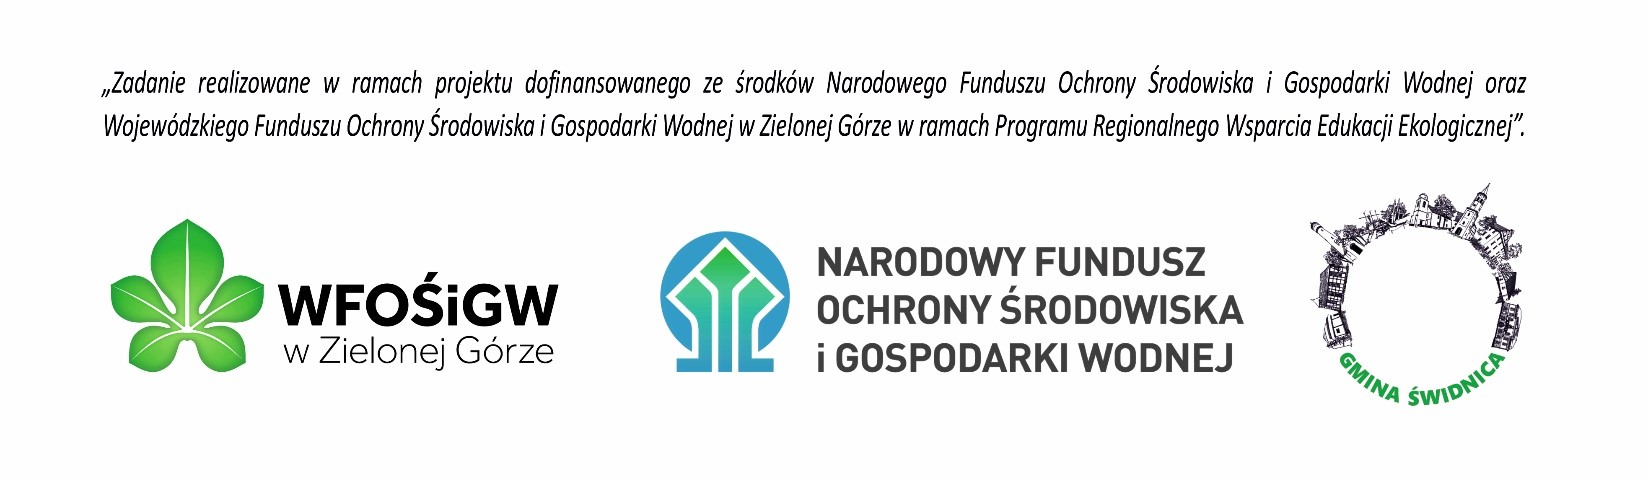 logotypy do projektu WFOŚiGW